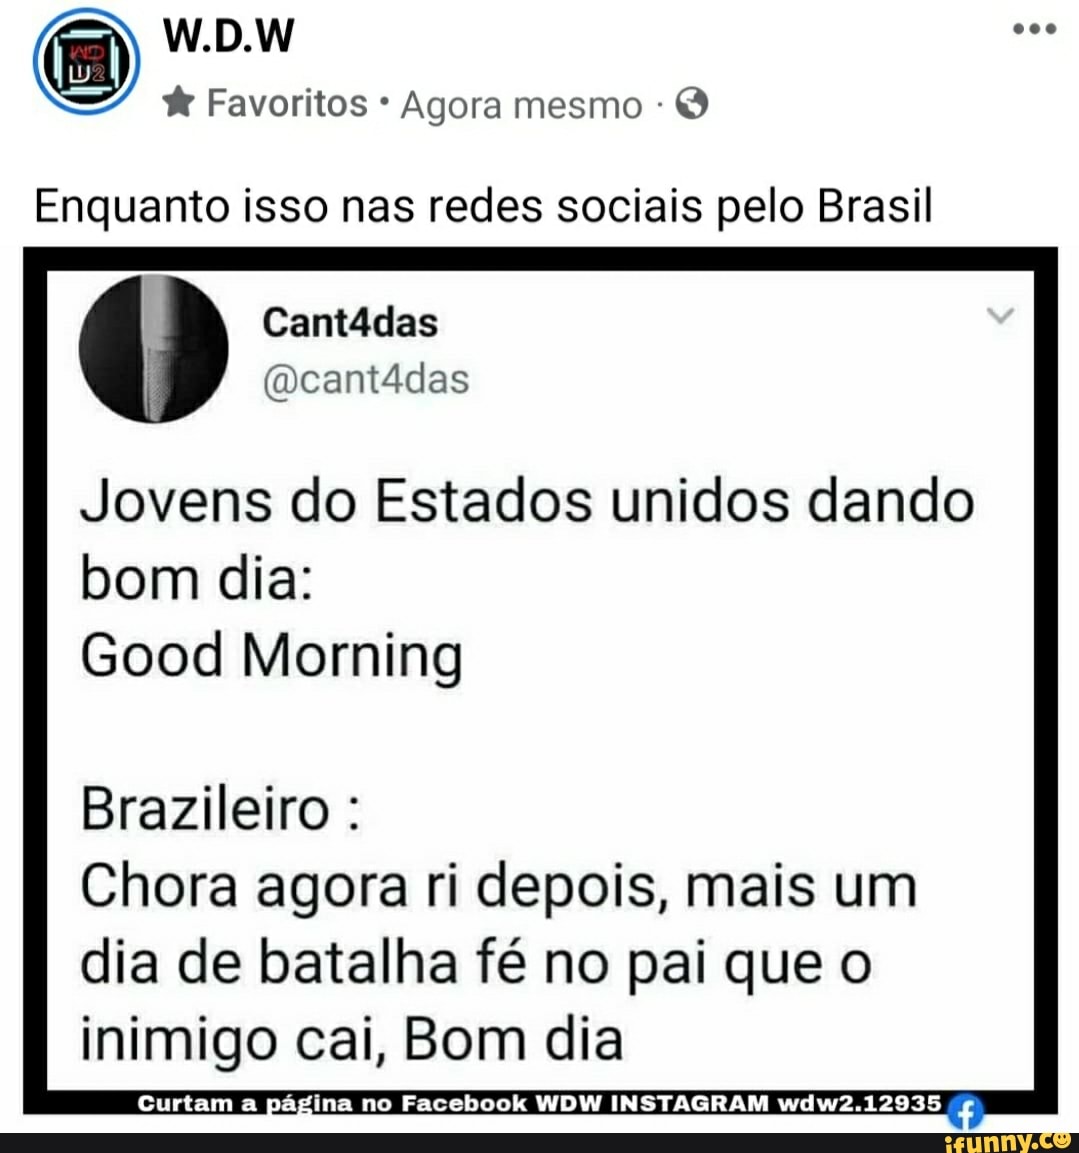  Favoritos Agora mesmo Enquanto isso nas redes sociais pelo Brasil  Cant4das Jovens do Estados unidos